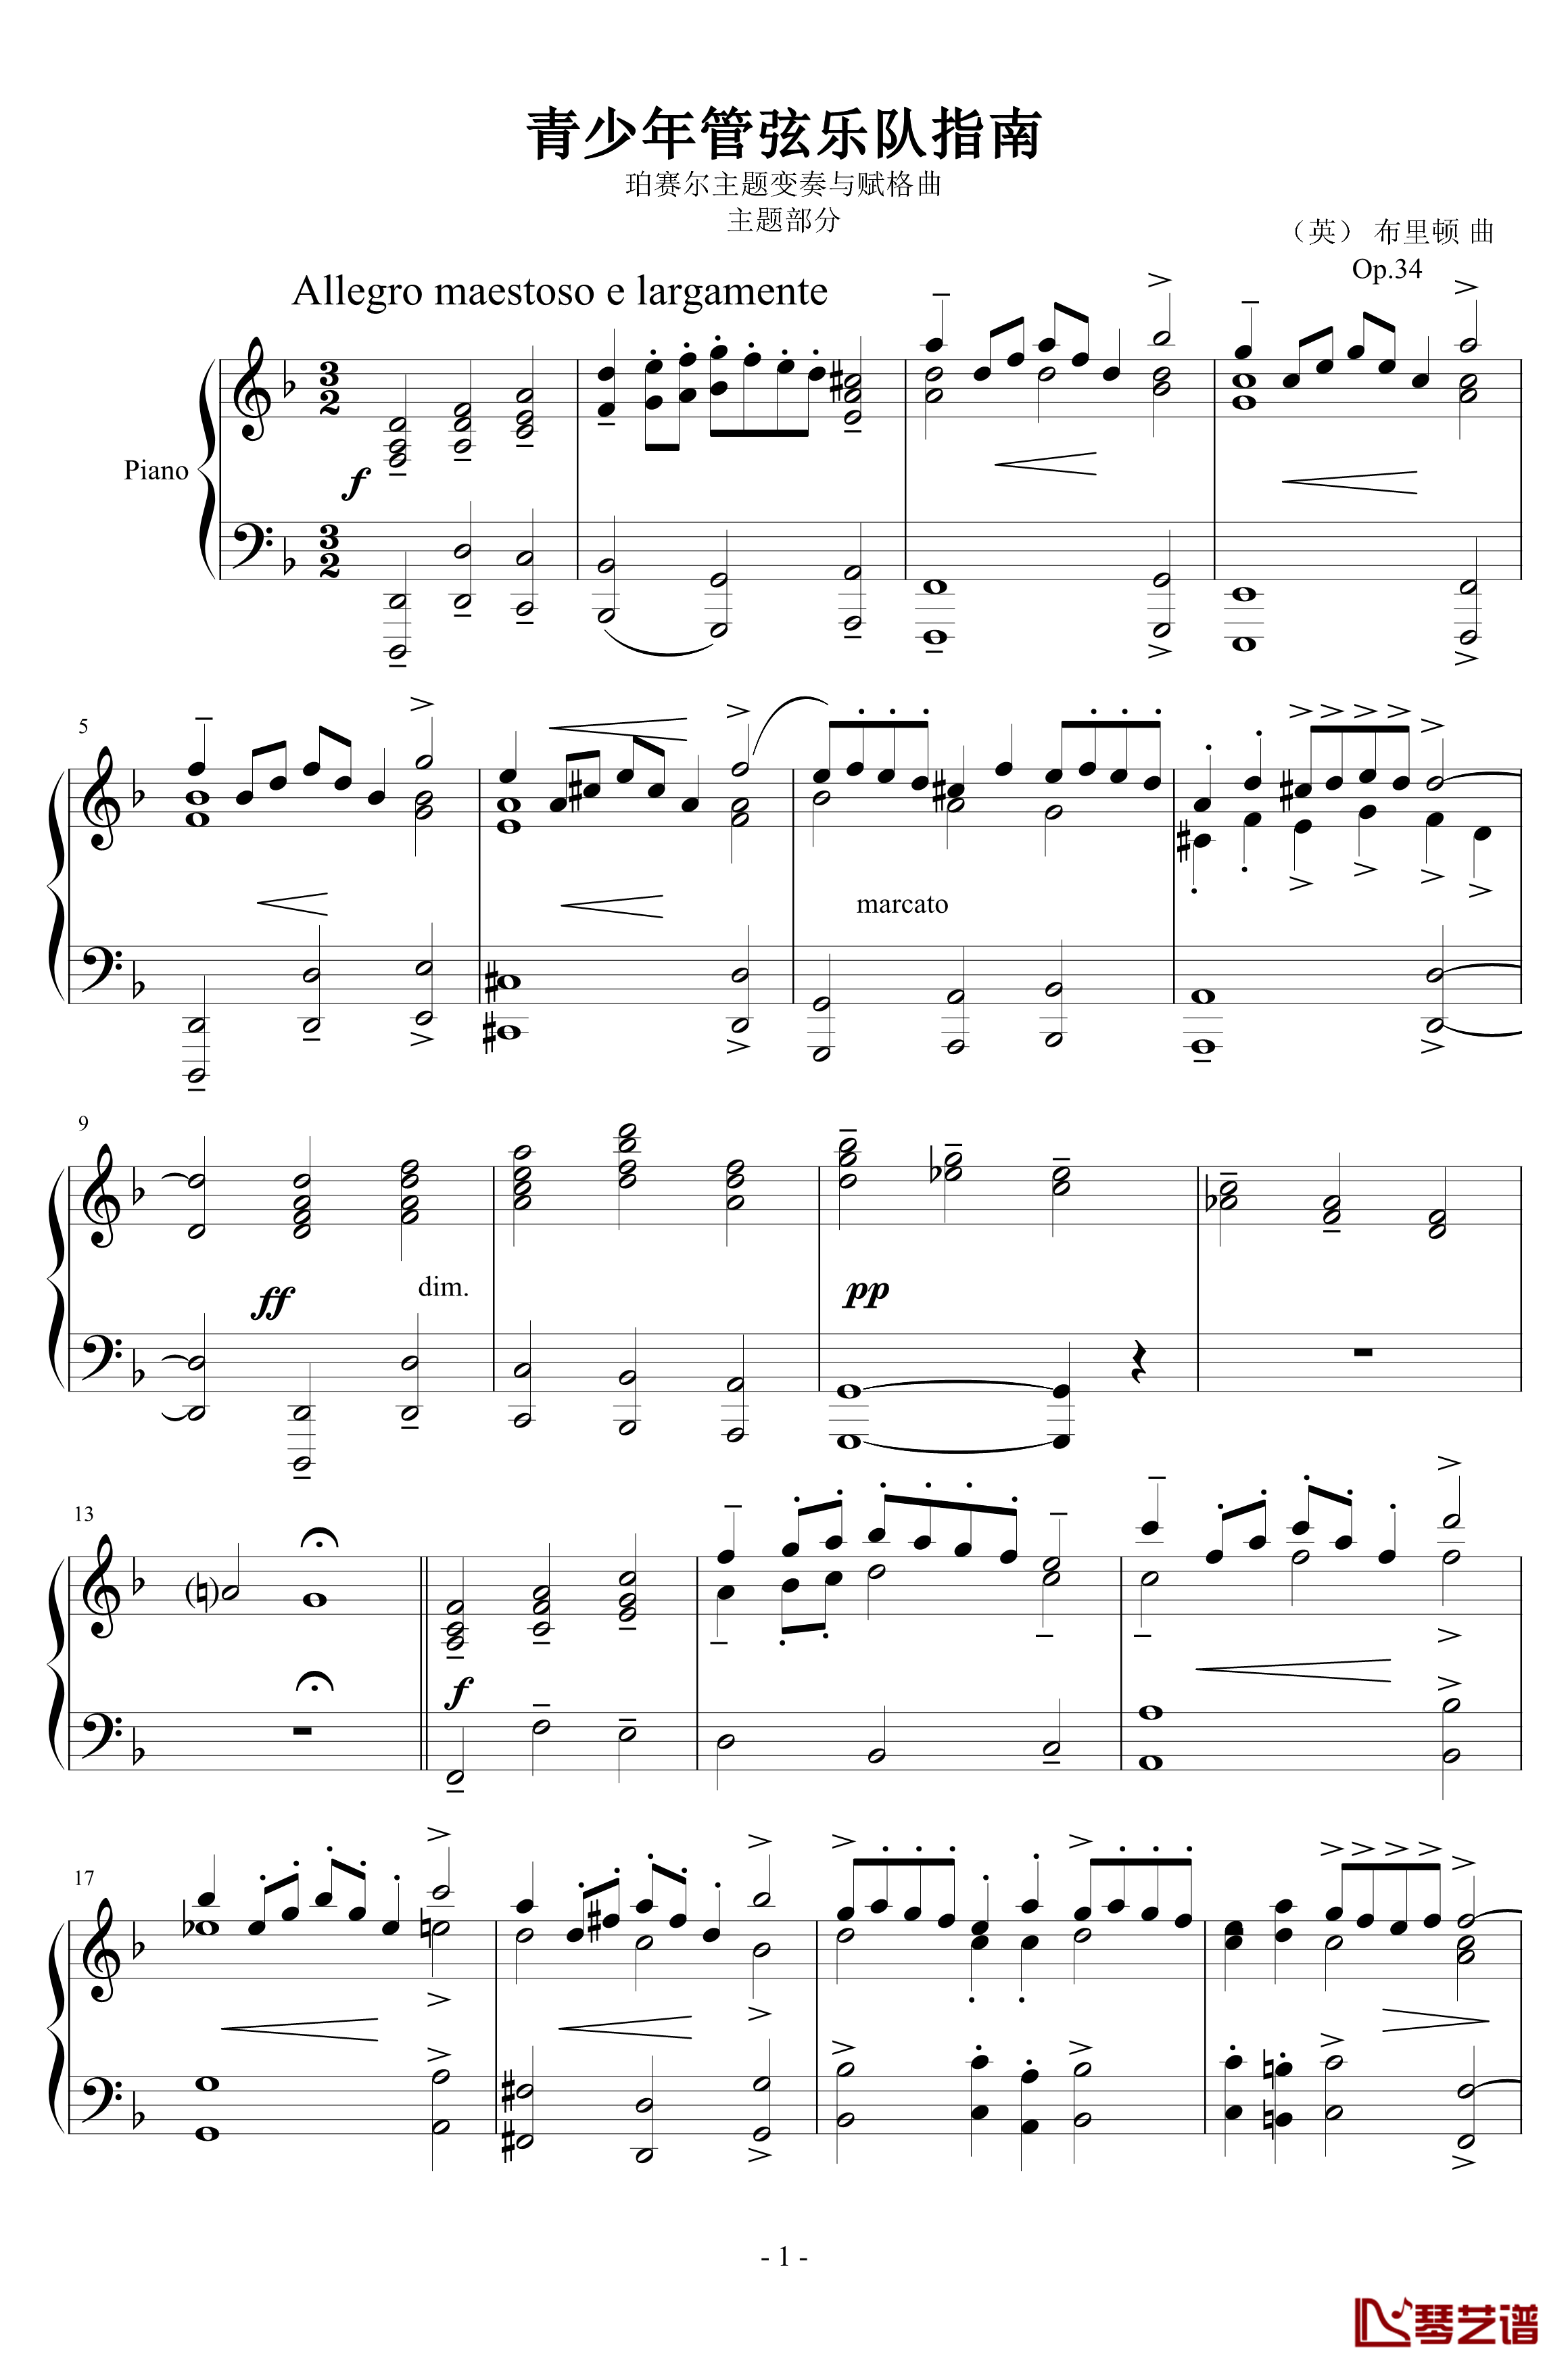 青少年管弦乐队指南钢琴谱-Op.34  主题部分-布里顿1